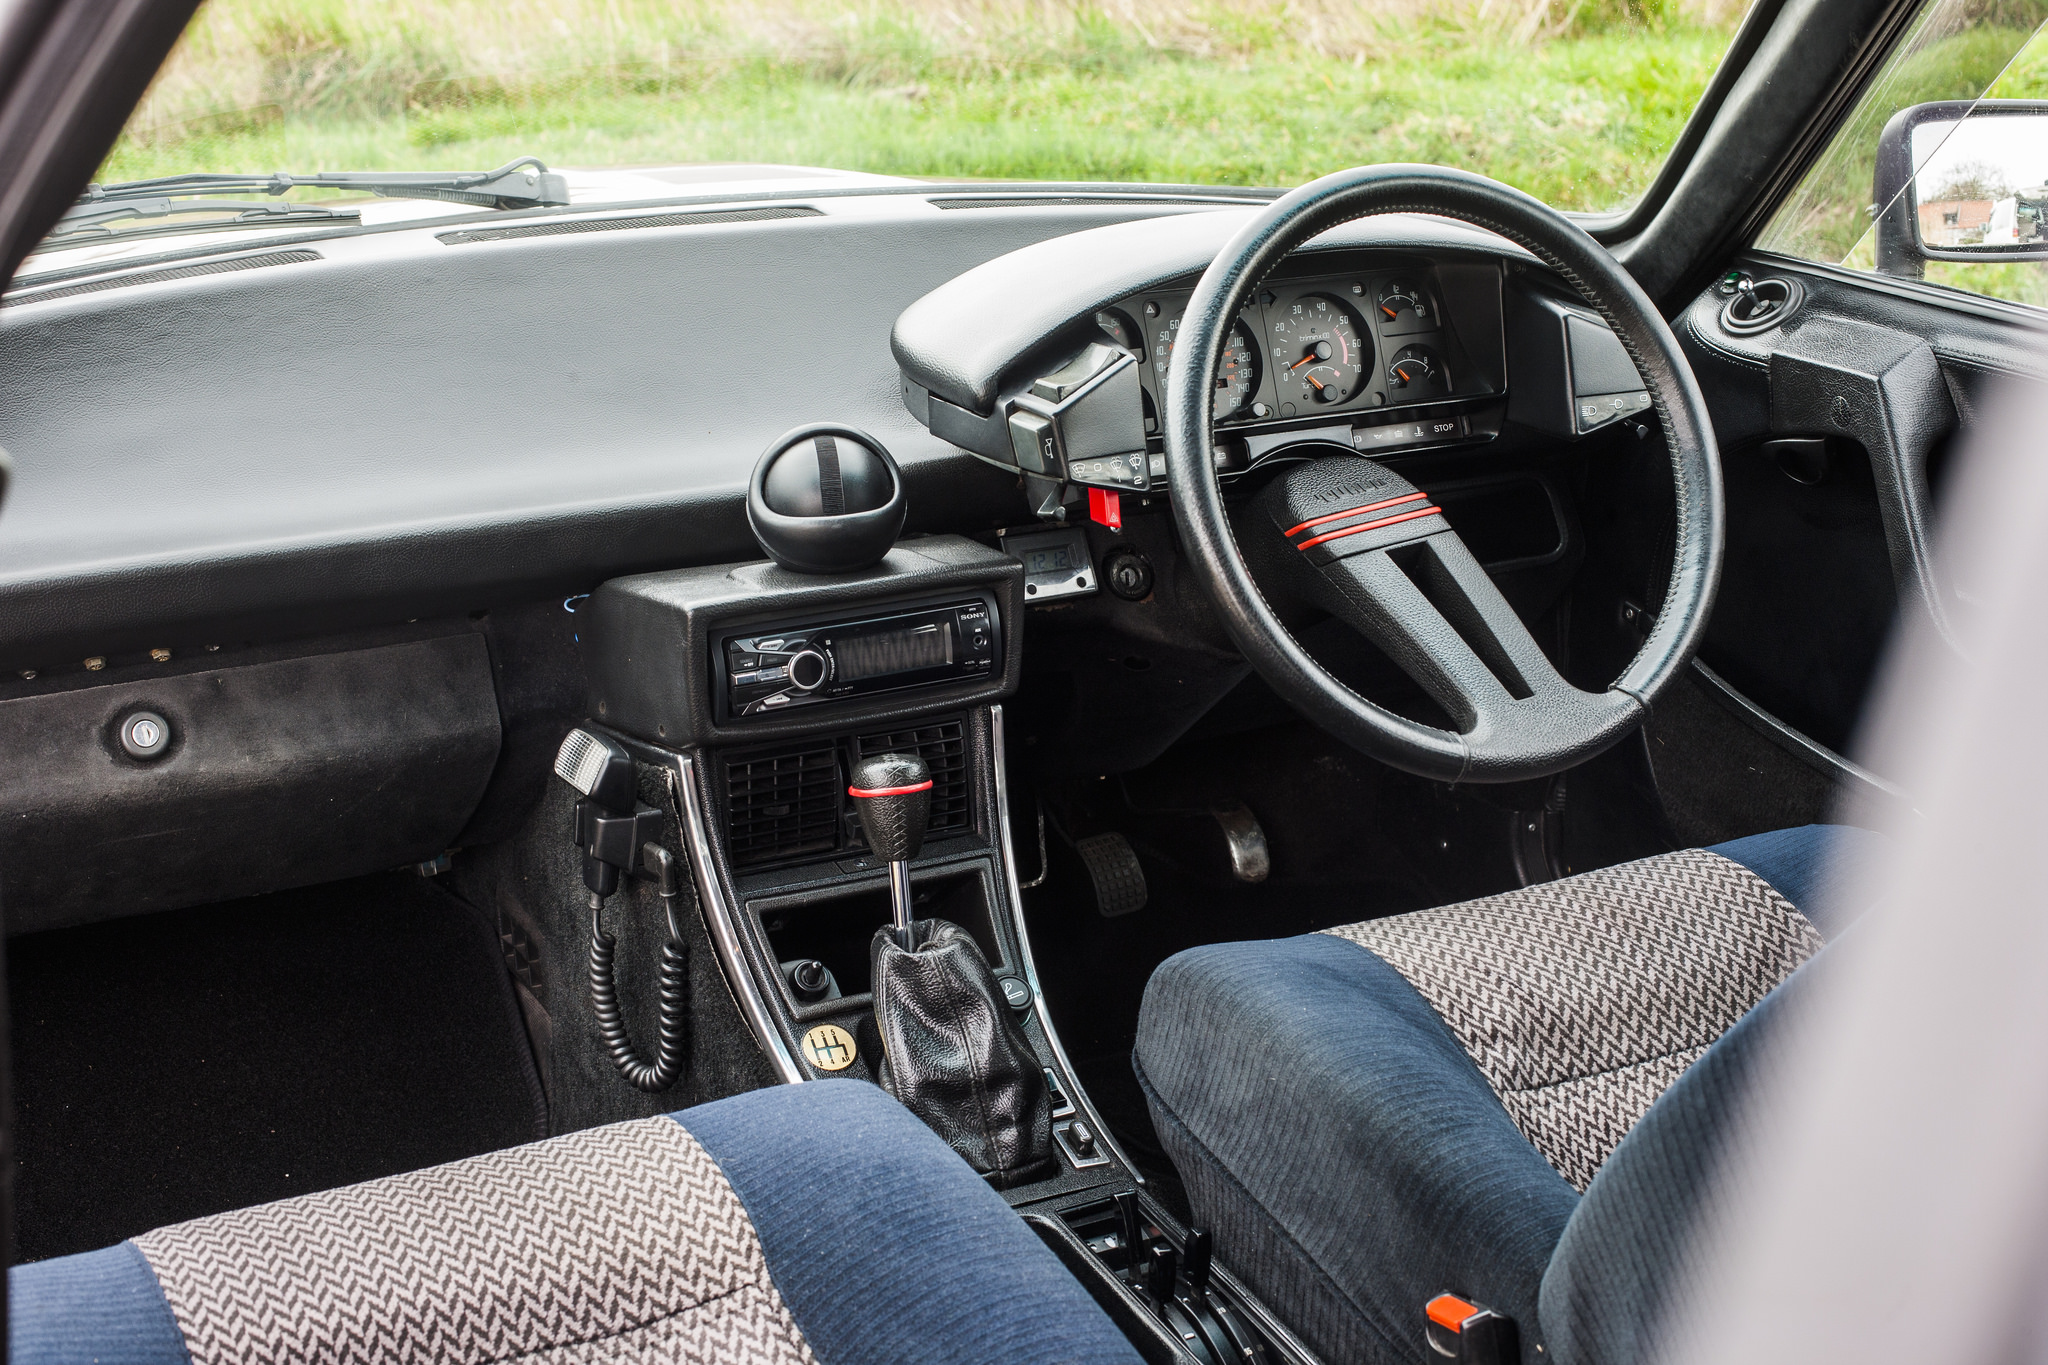 1984 Citroen Cx Gti Turbo Series 1 Road Test Drive